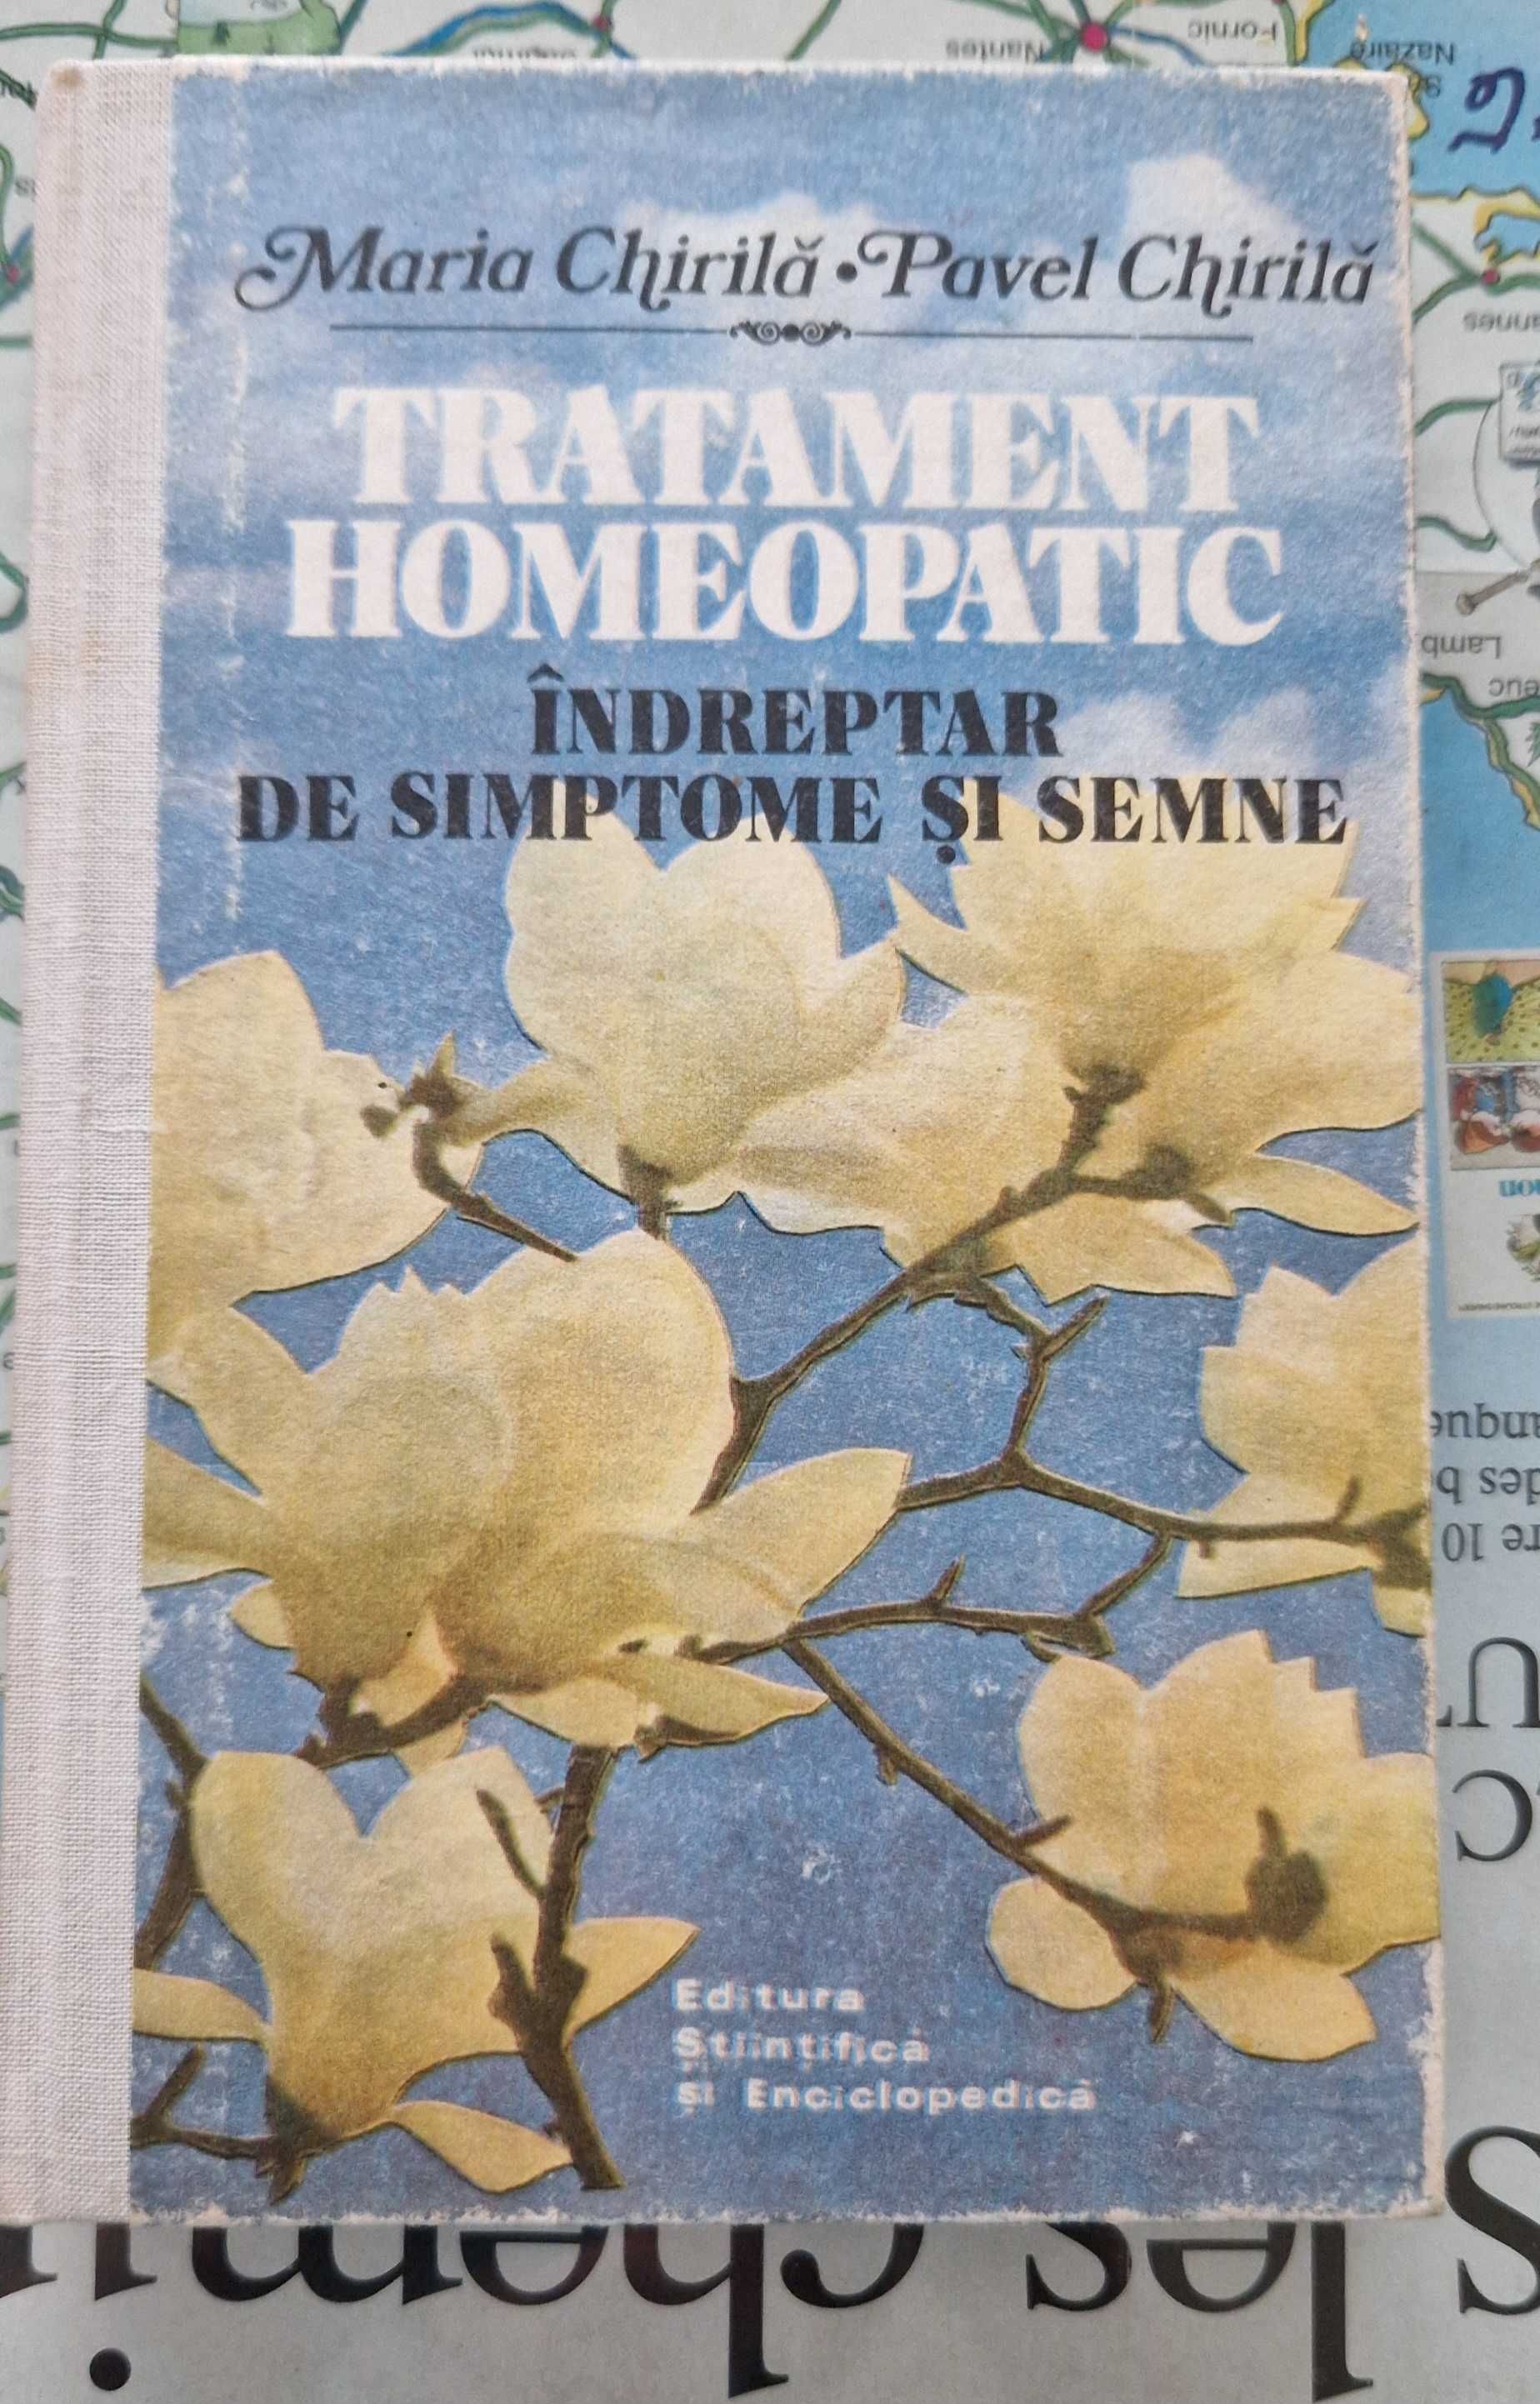 Carte -Tratament homeopatic , Indreptar de simptome si semne "